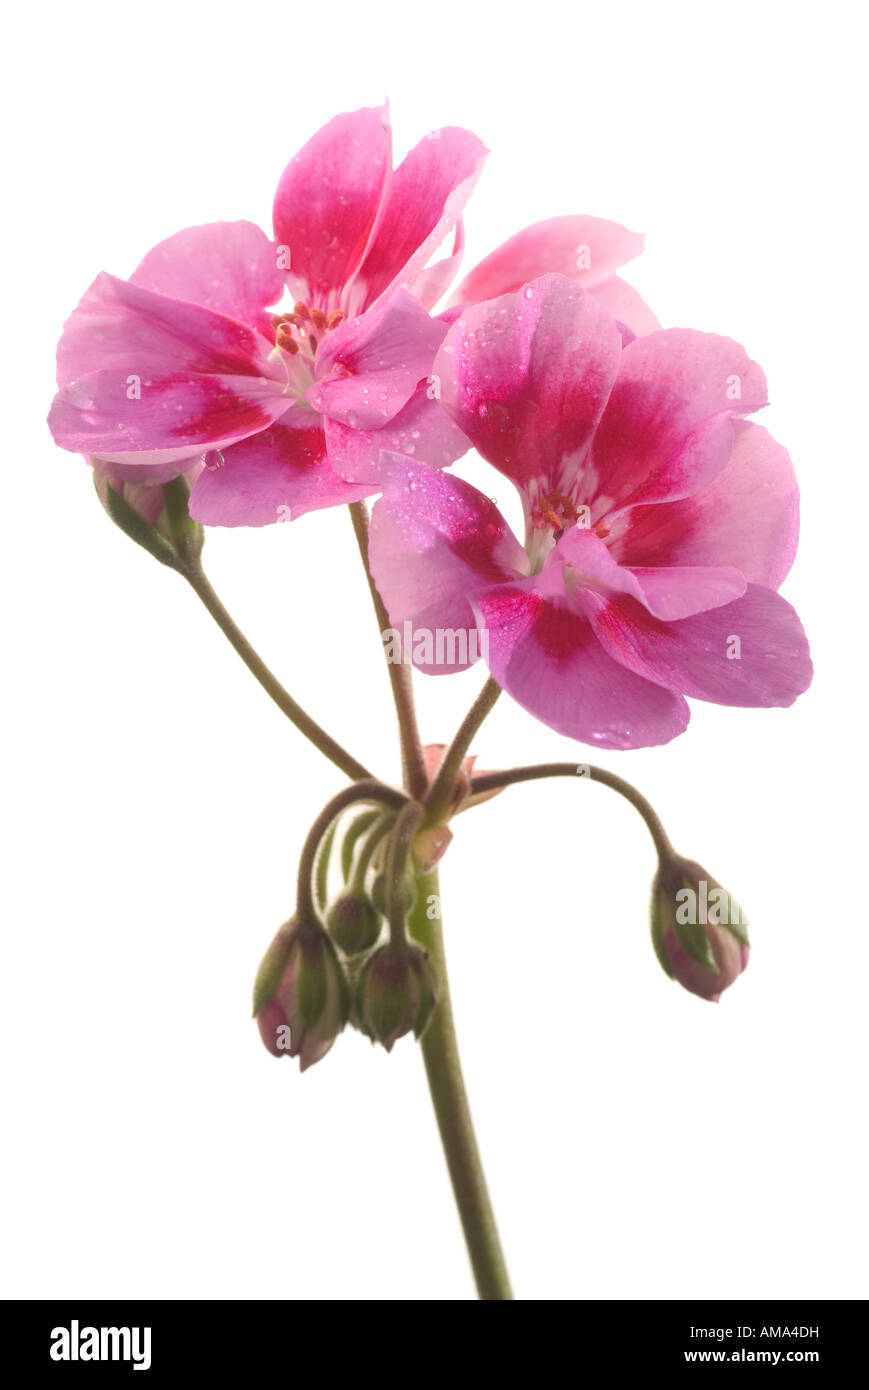 Geranium Pelargonium x hortorum flowers Stock Photo